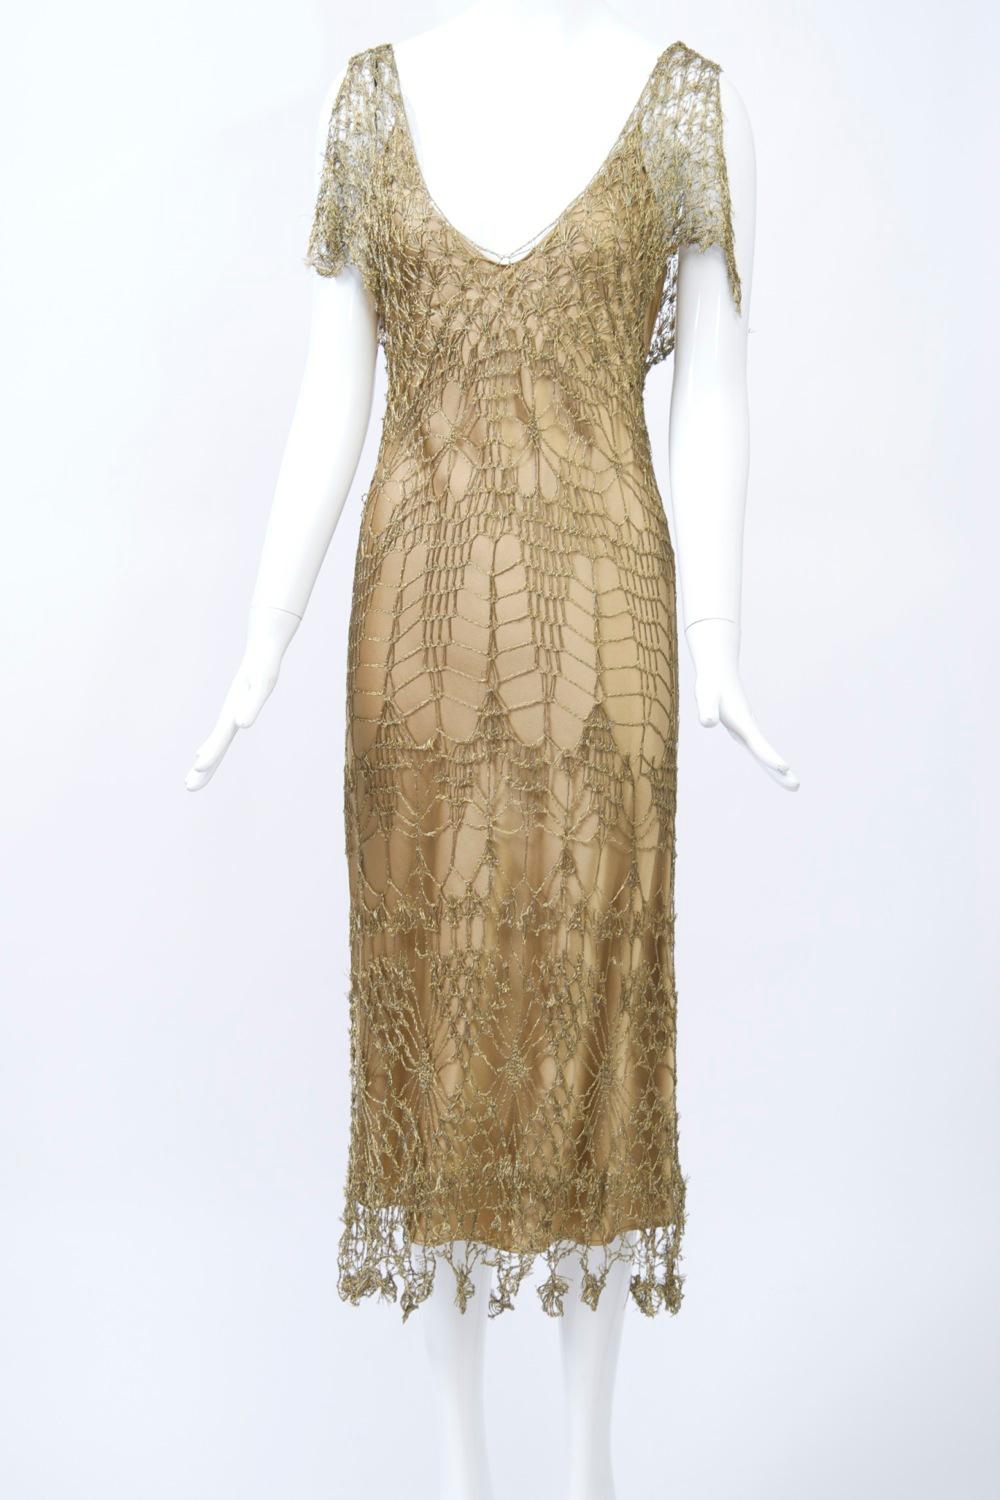 Robe Donna Karan en dentelle crochetée d'or métallisé avec une robe complémentaire en charmeuse de soie en dessous. La robe en crochet épouse le corps et présente un décolleté en V profond à l'avant et à l'arrière, des manches capuchon fendues et